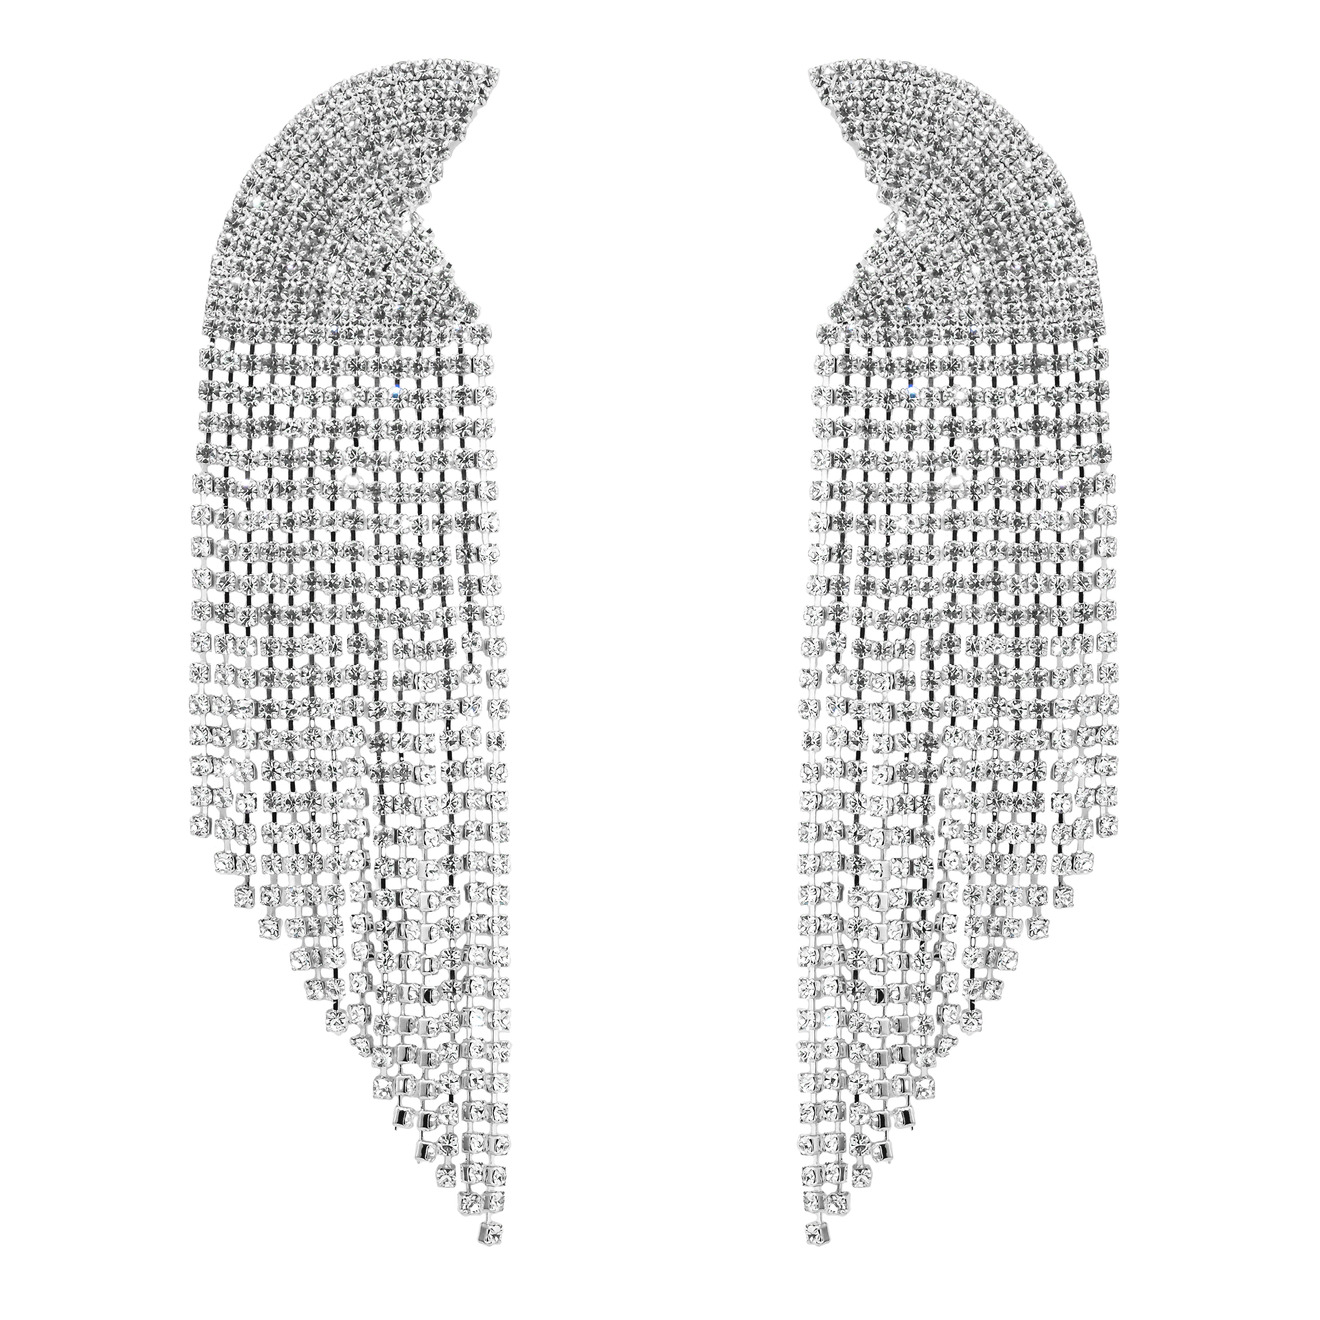 Herald Percy Серебристые серьги-полукруги с кристаллами herald percy серебристые серьги восьмигранники с кристаллами